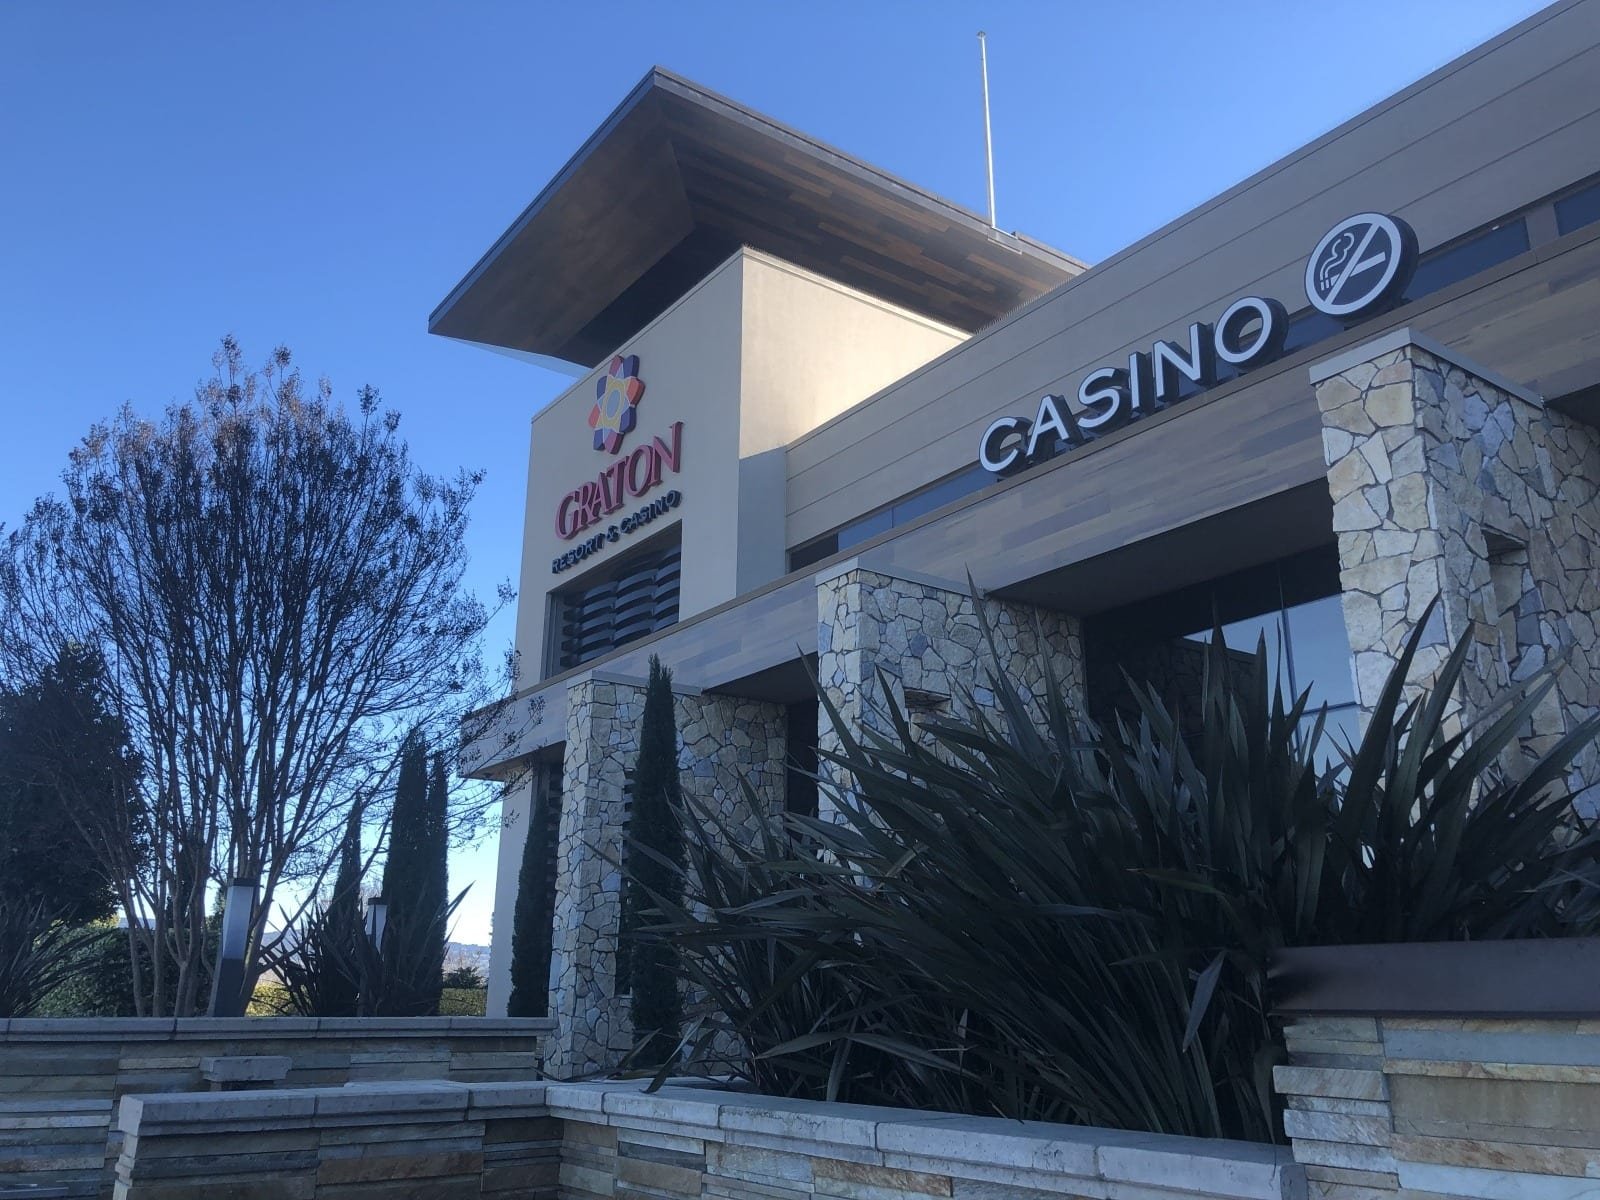 chris scott email graton resort and casino